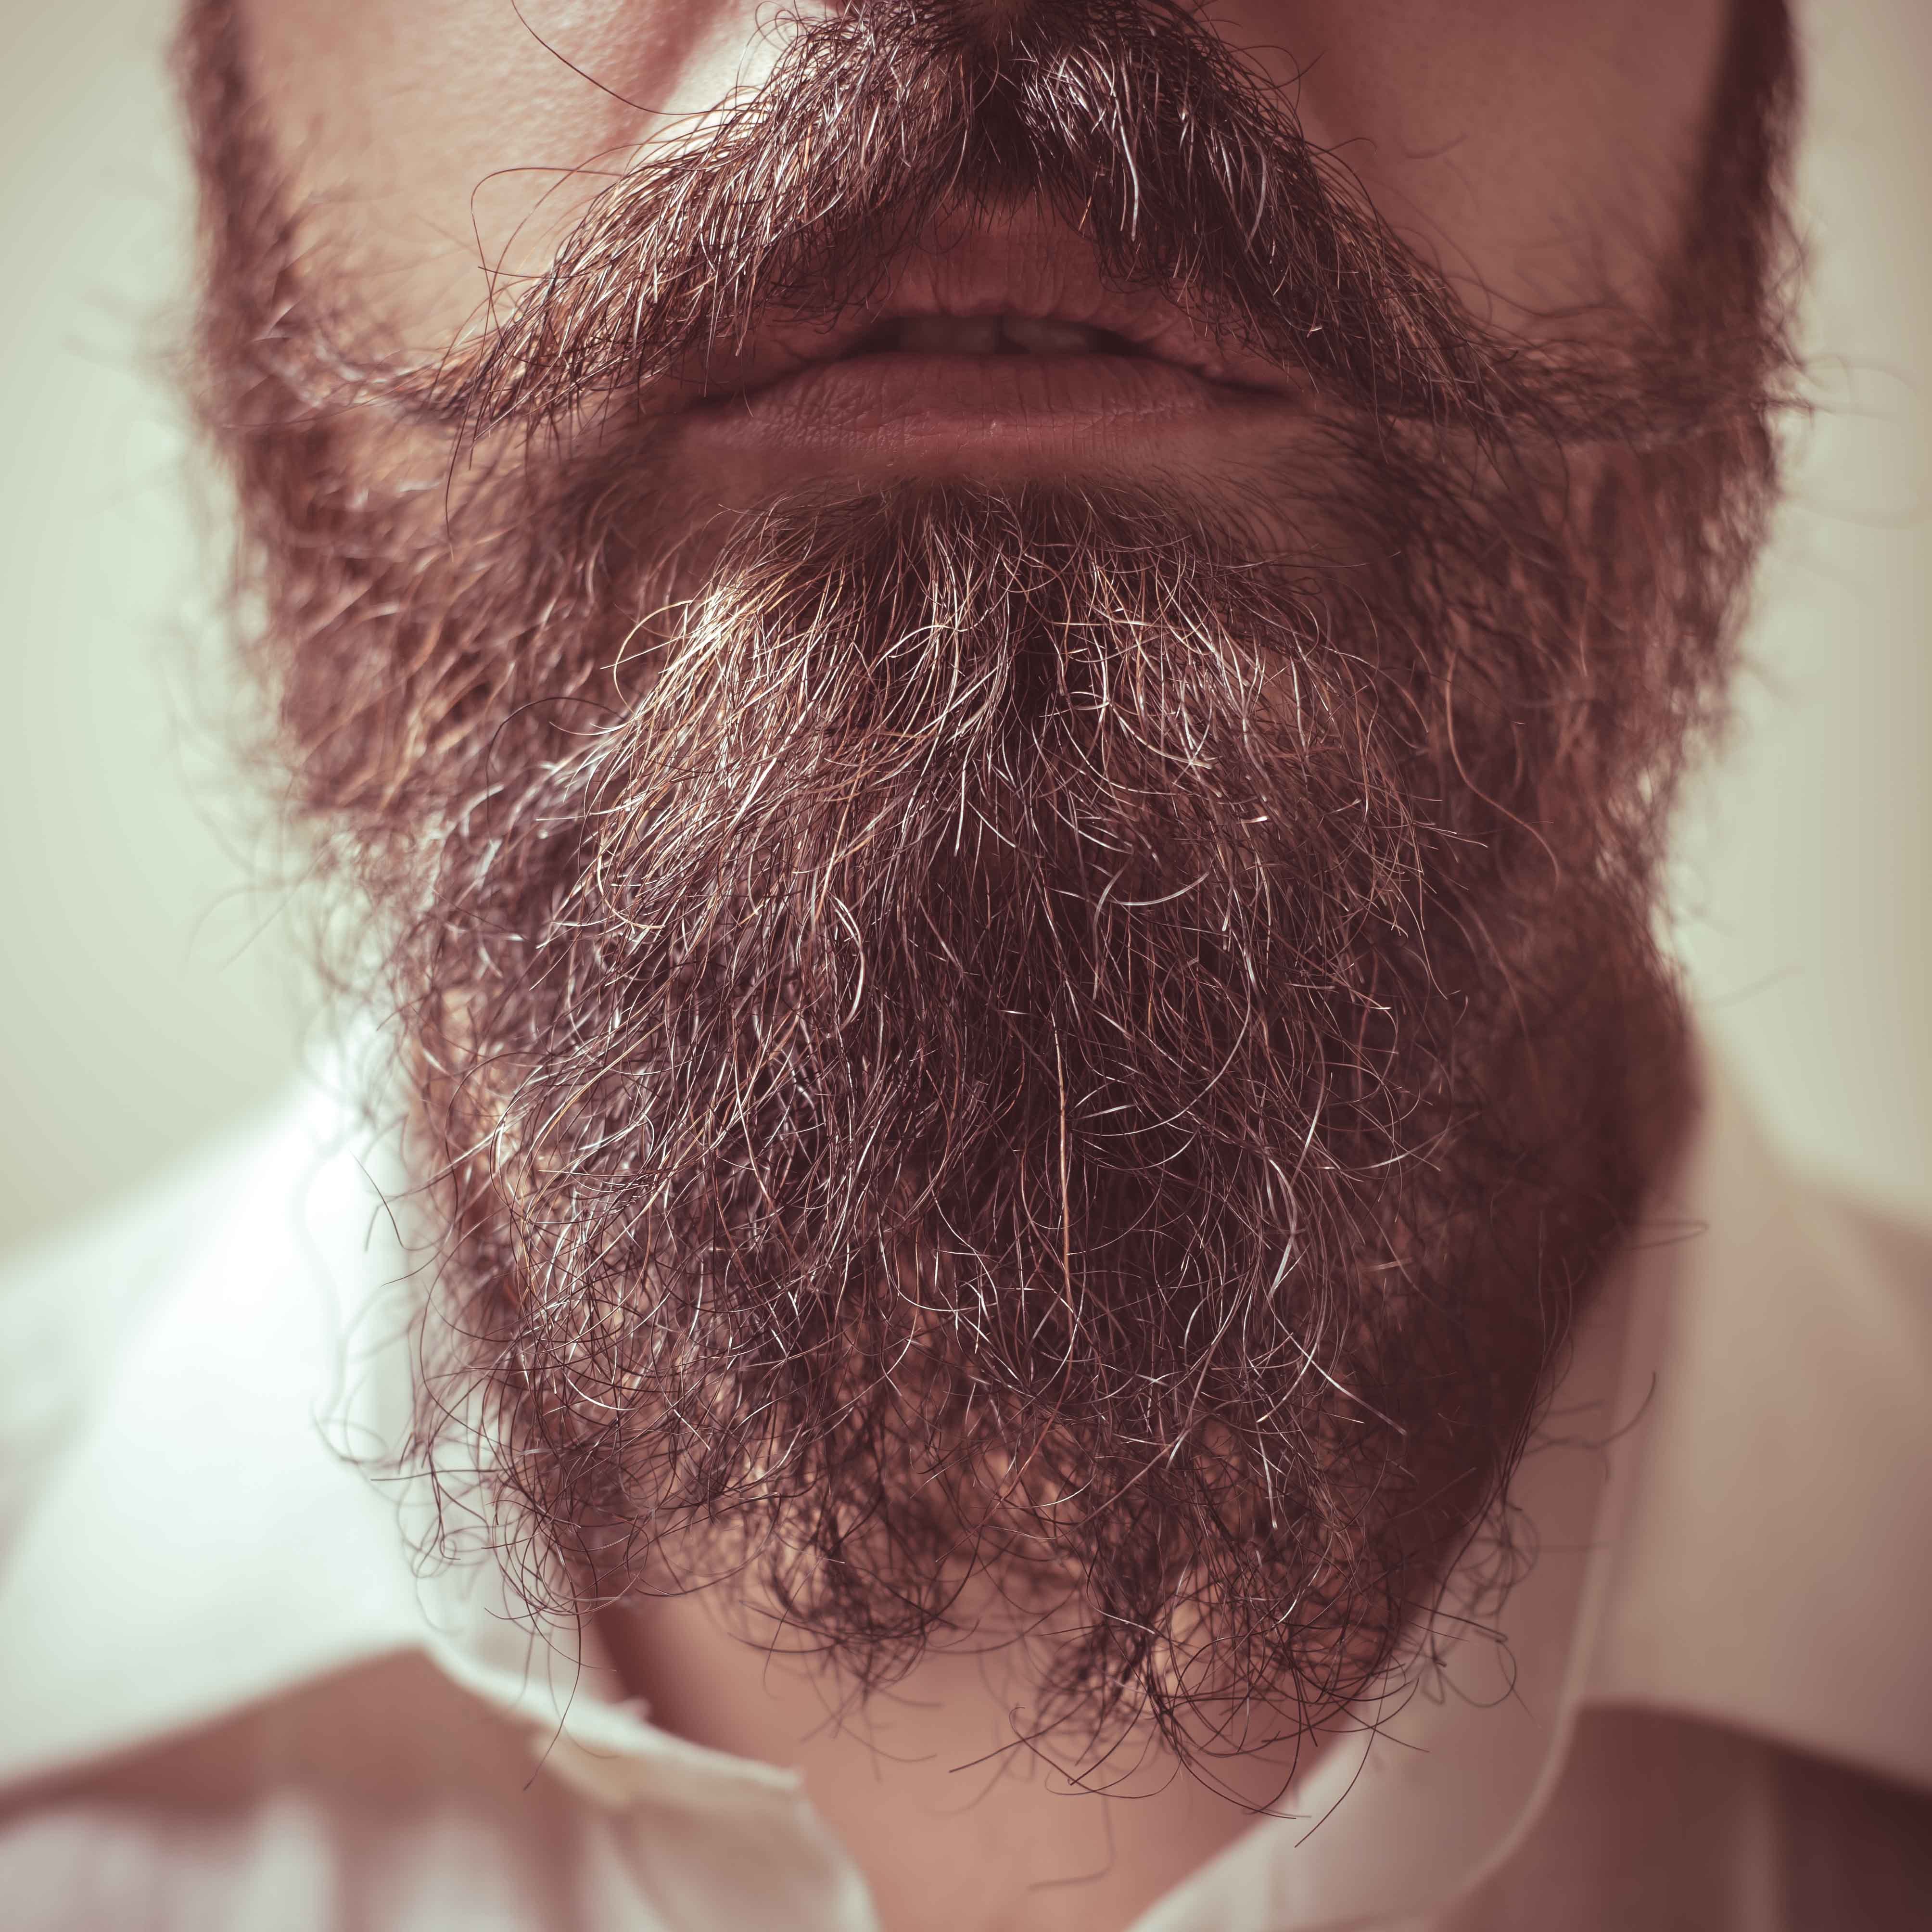 A beard up close | Source: Shutterstock